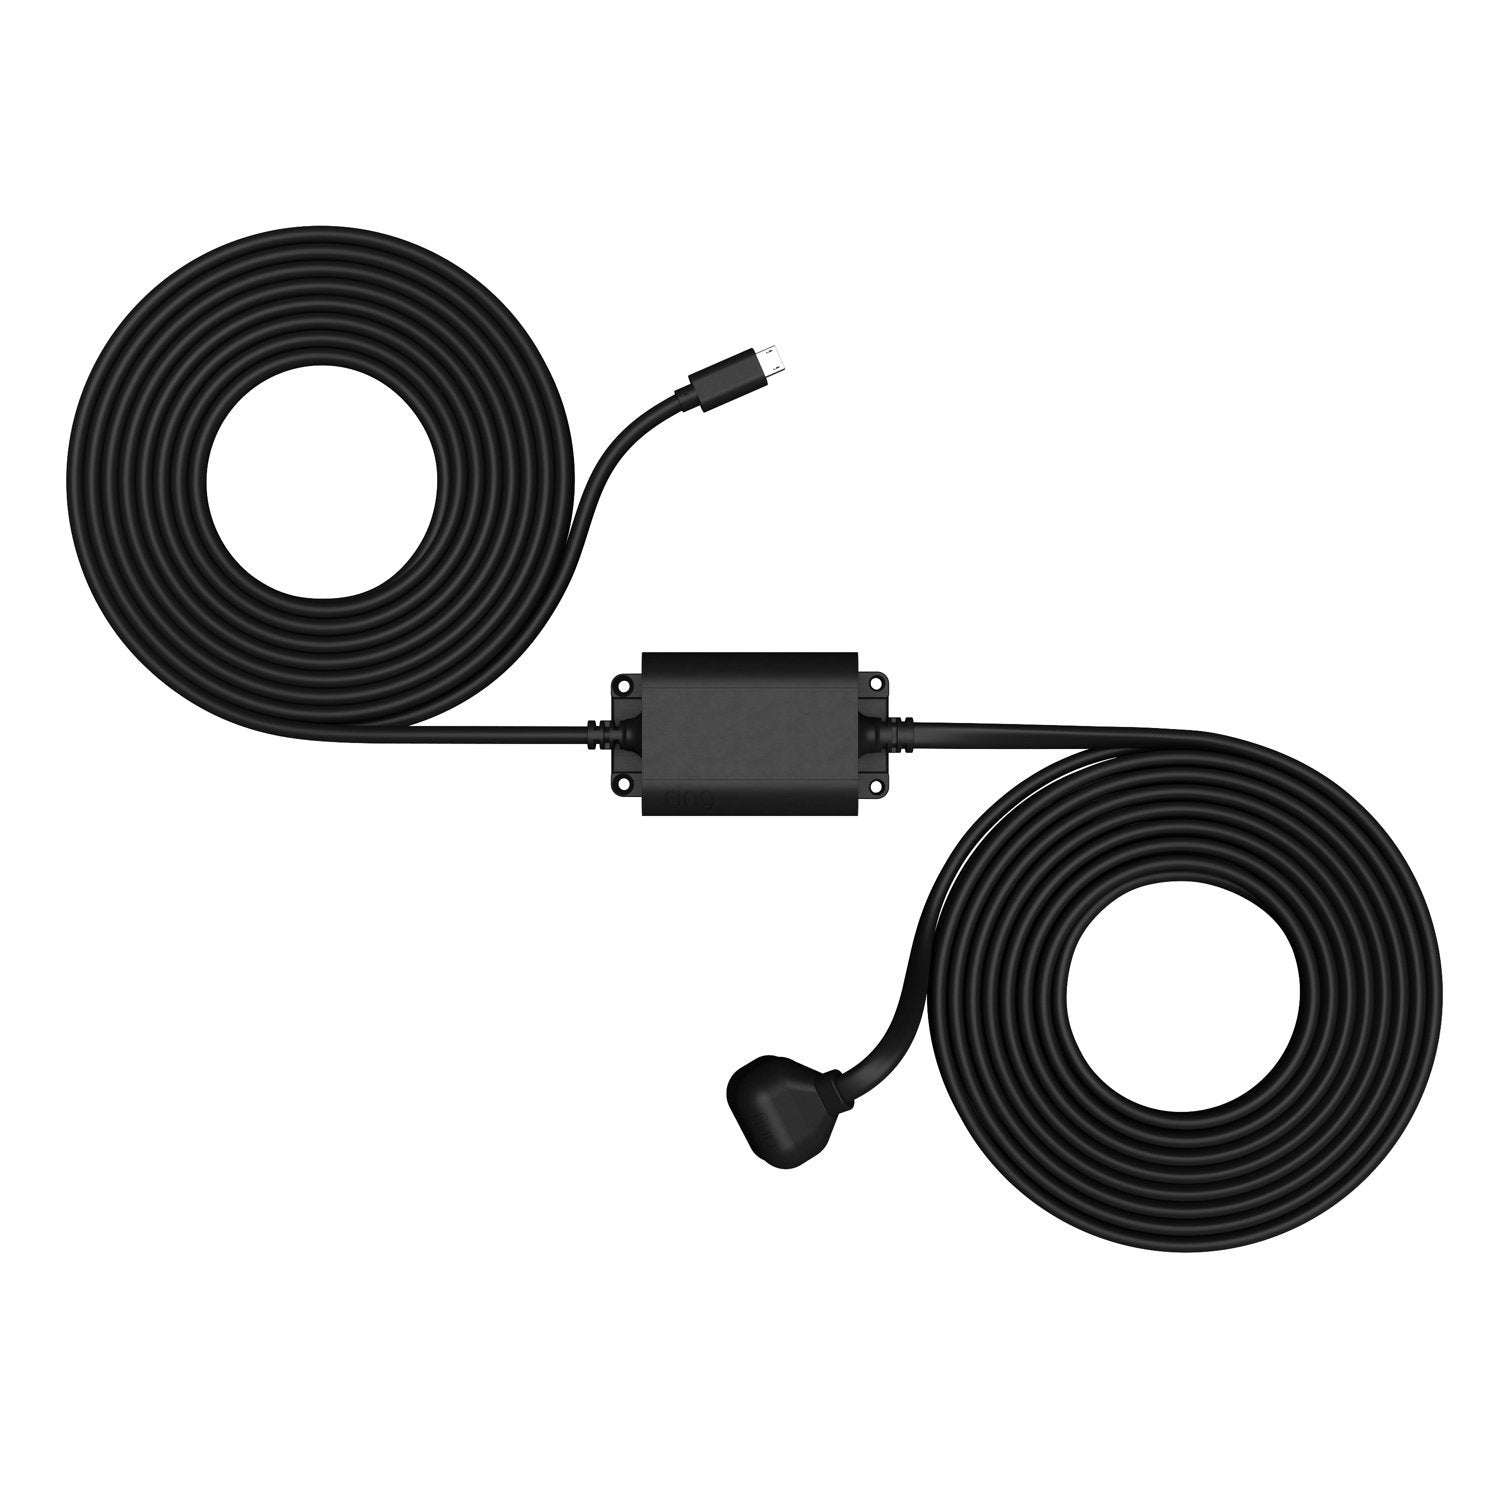 Stick Up Cam Elite with Indoor/Outdoor Power Adapter - Indoor/Outdoor Power Adapter, micro USB in black